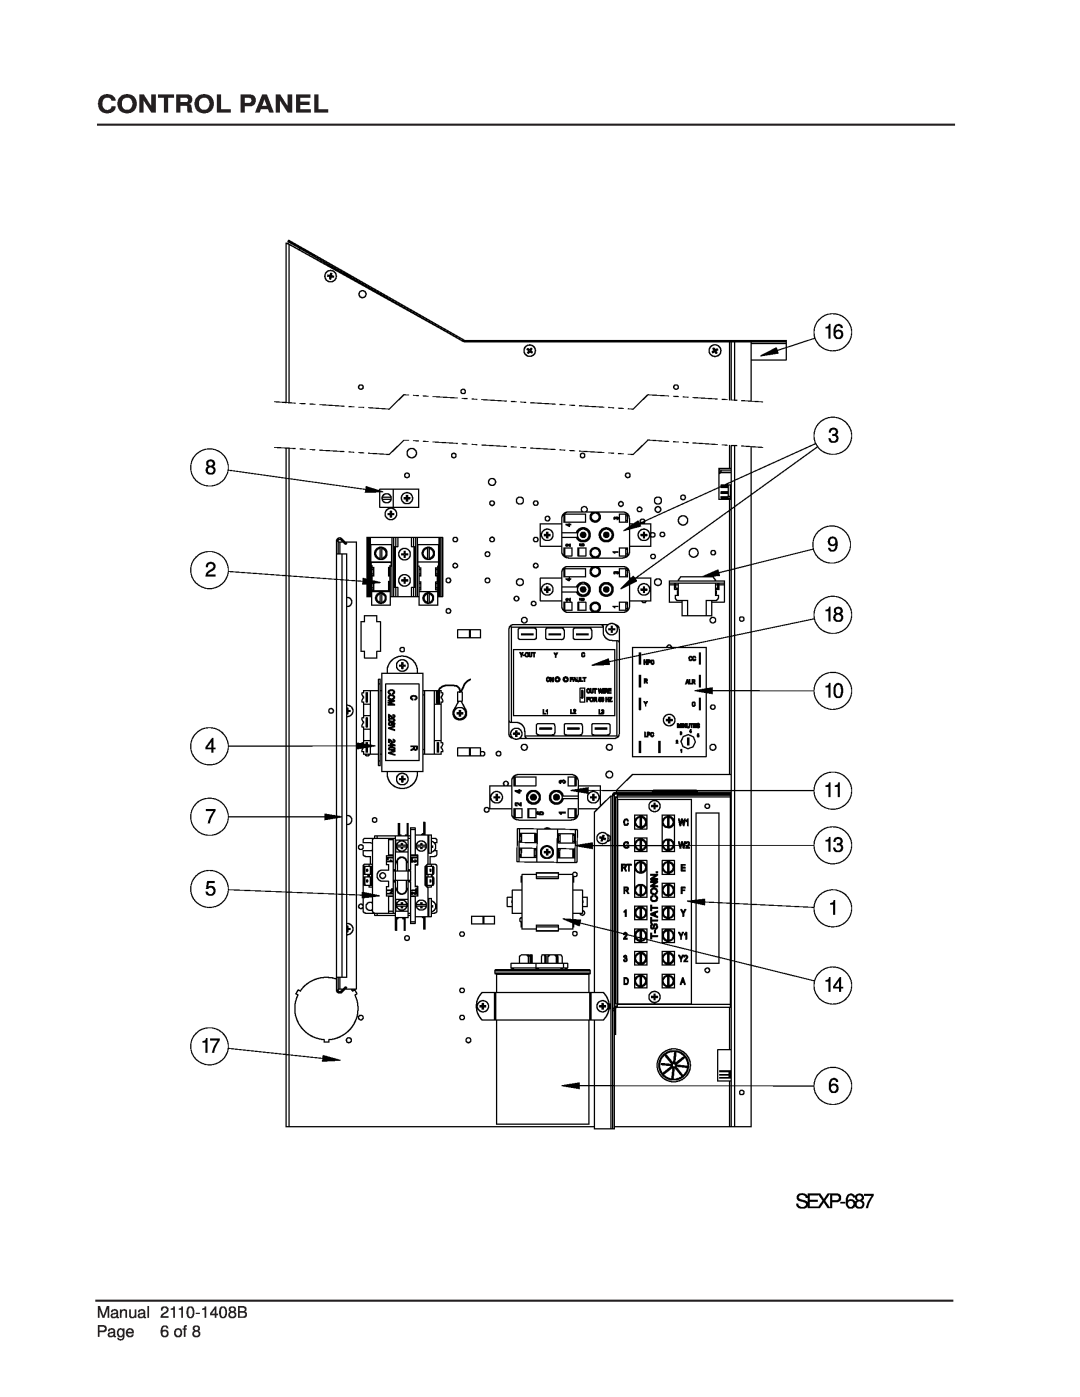 Bard W24L2, W18L2, W17L2 manual Control Panel, SEXP-687 